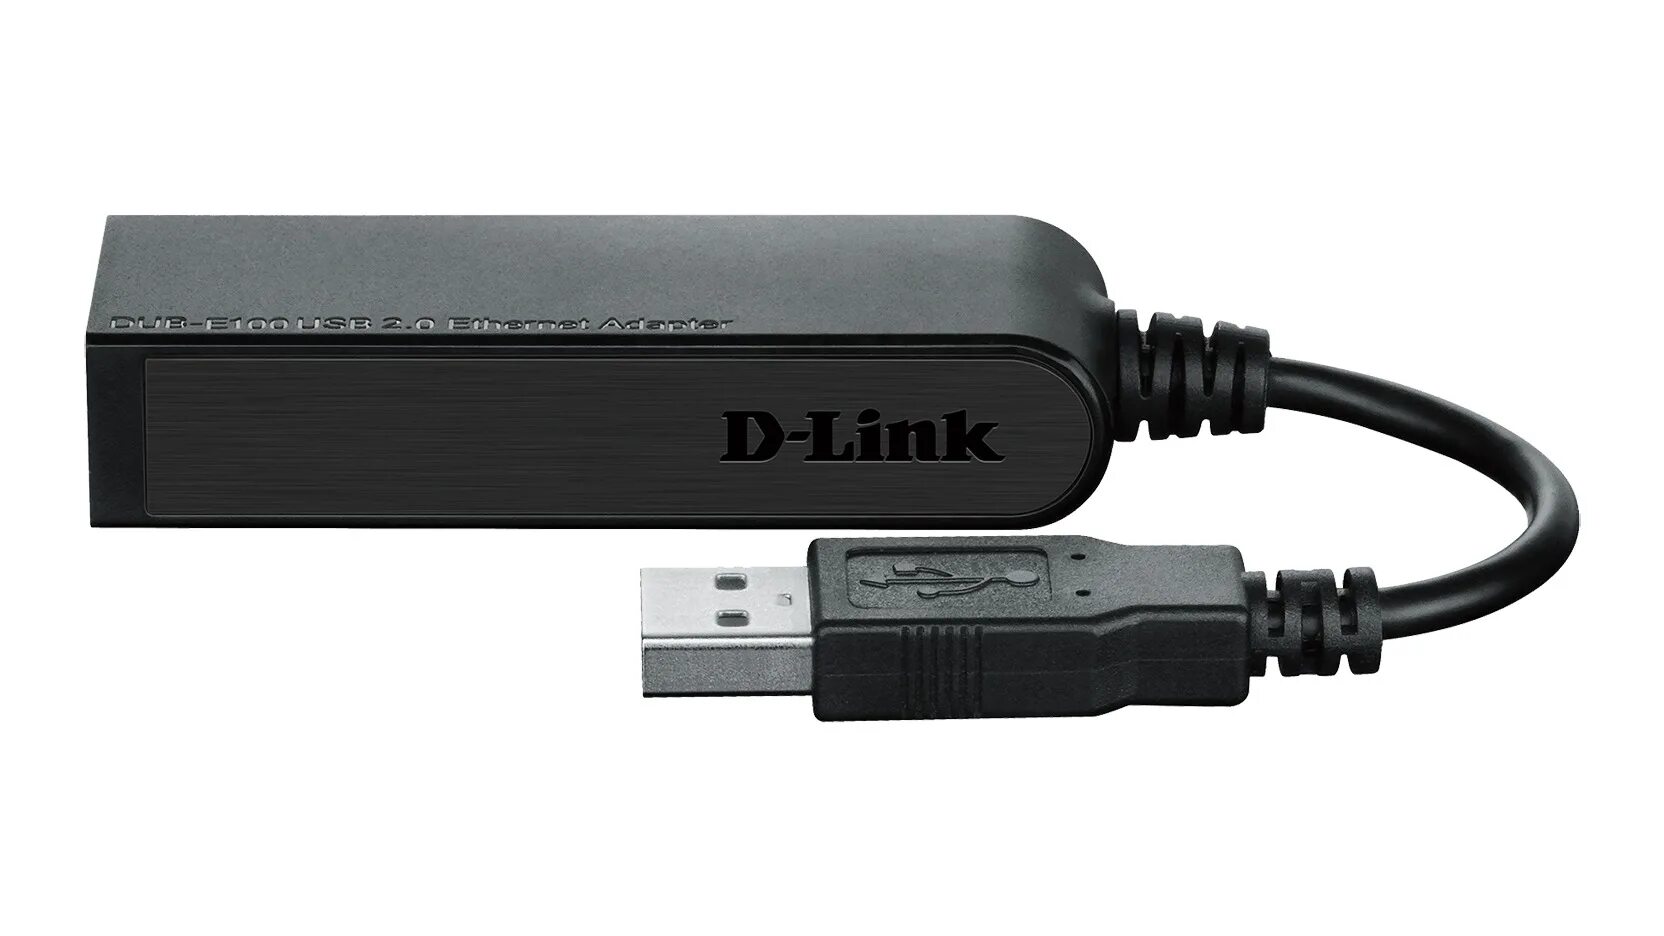 Usb link купить. Сетевой адаптер d-link Dub-e100. Сетевой адаптер Ethernet d-link Dub-e100/b/d1a USB. Сетевой адаптер fast Ethernet d-link Dub-e100 USB 2.0. Адаптер d-link Dub-1320.